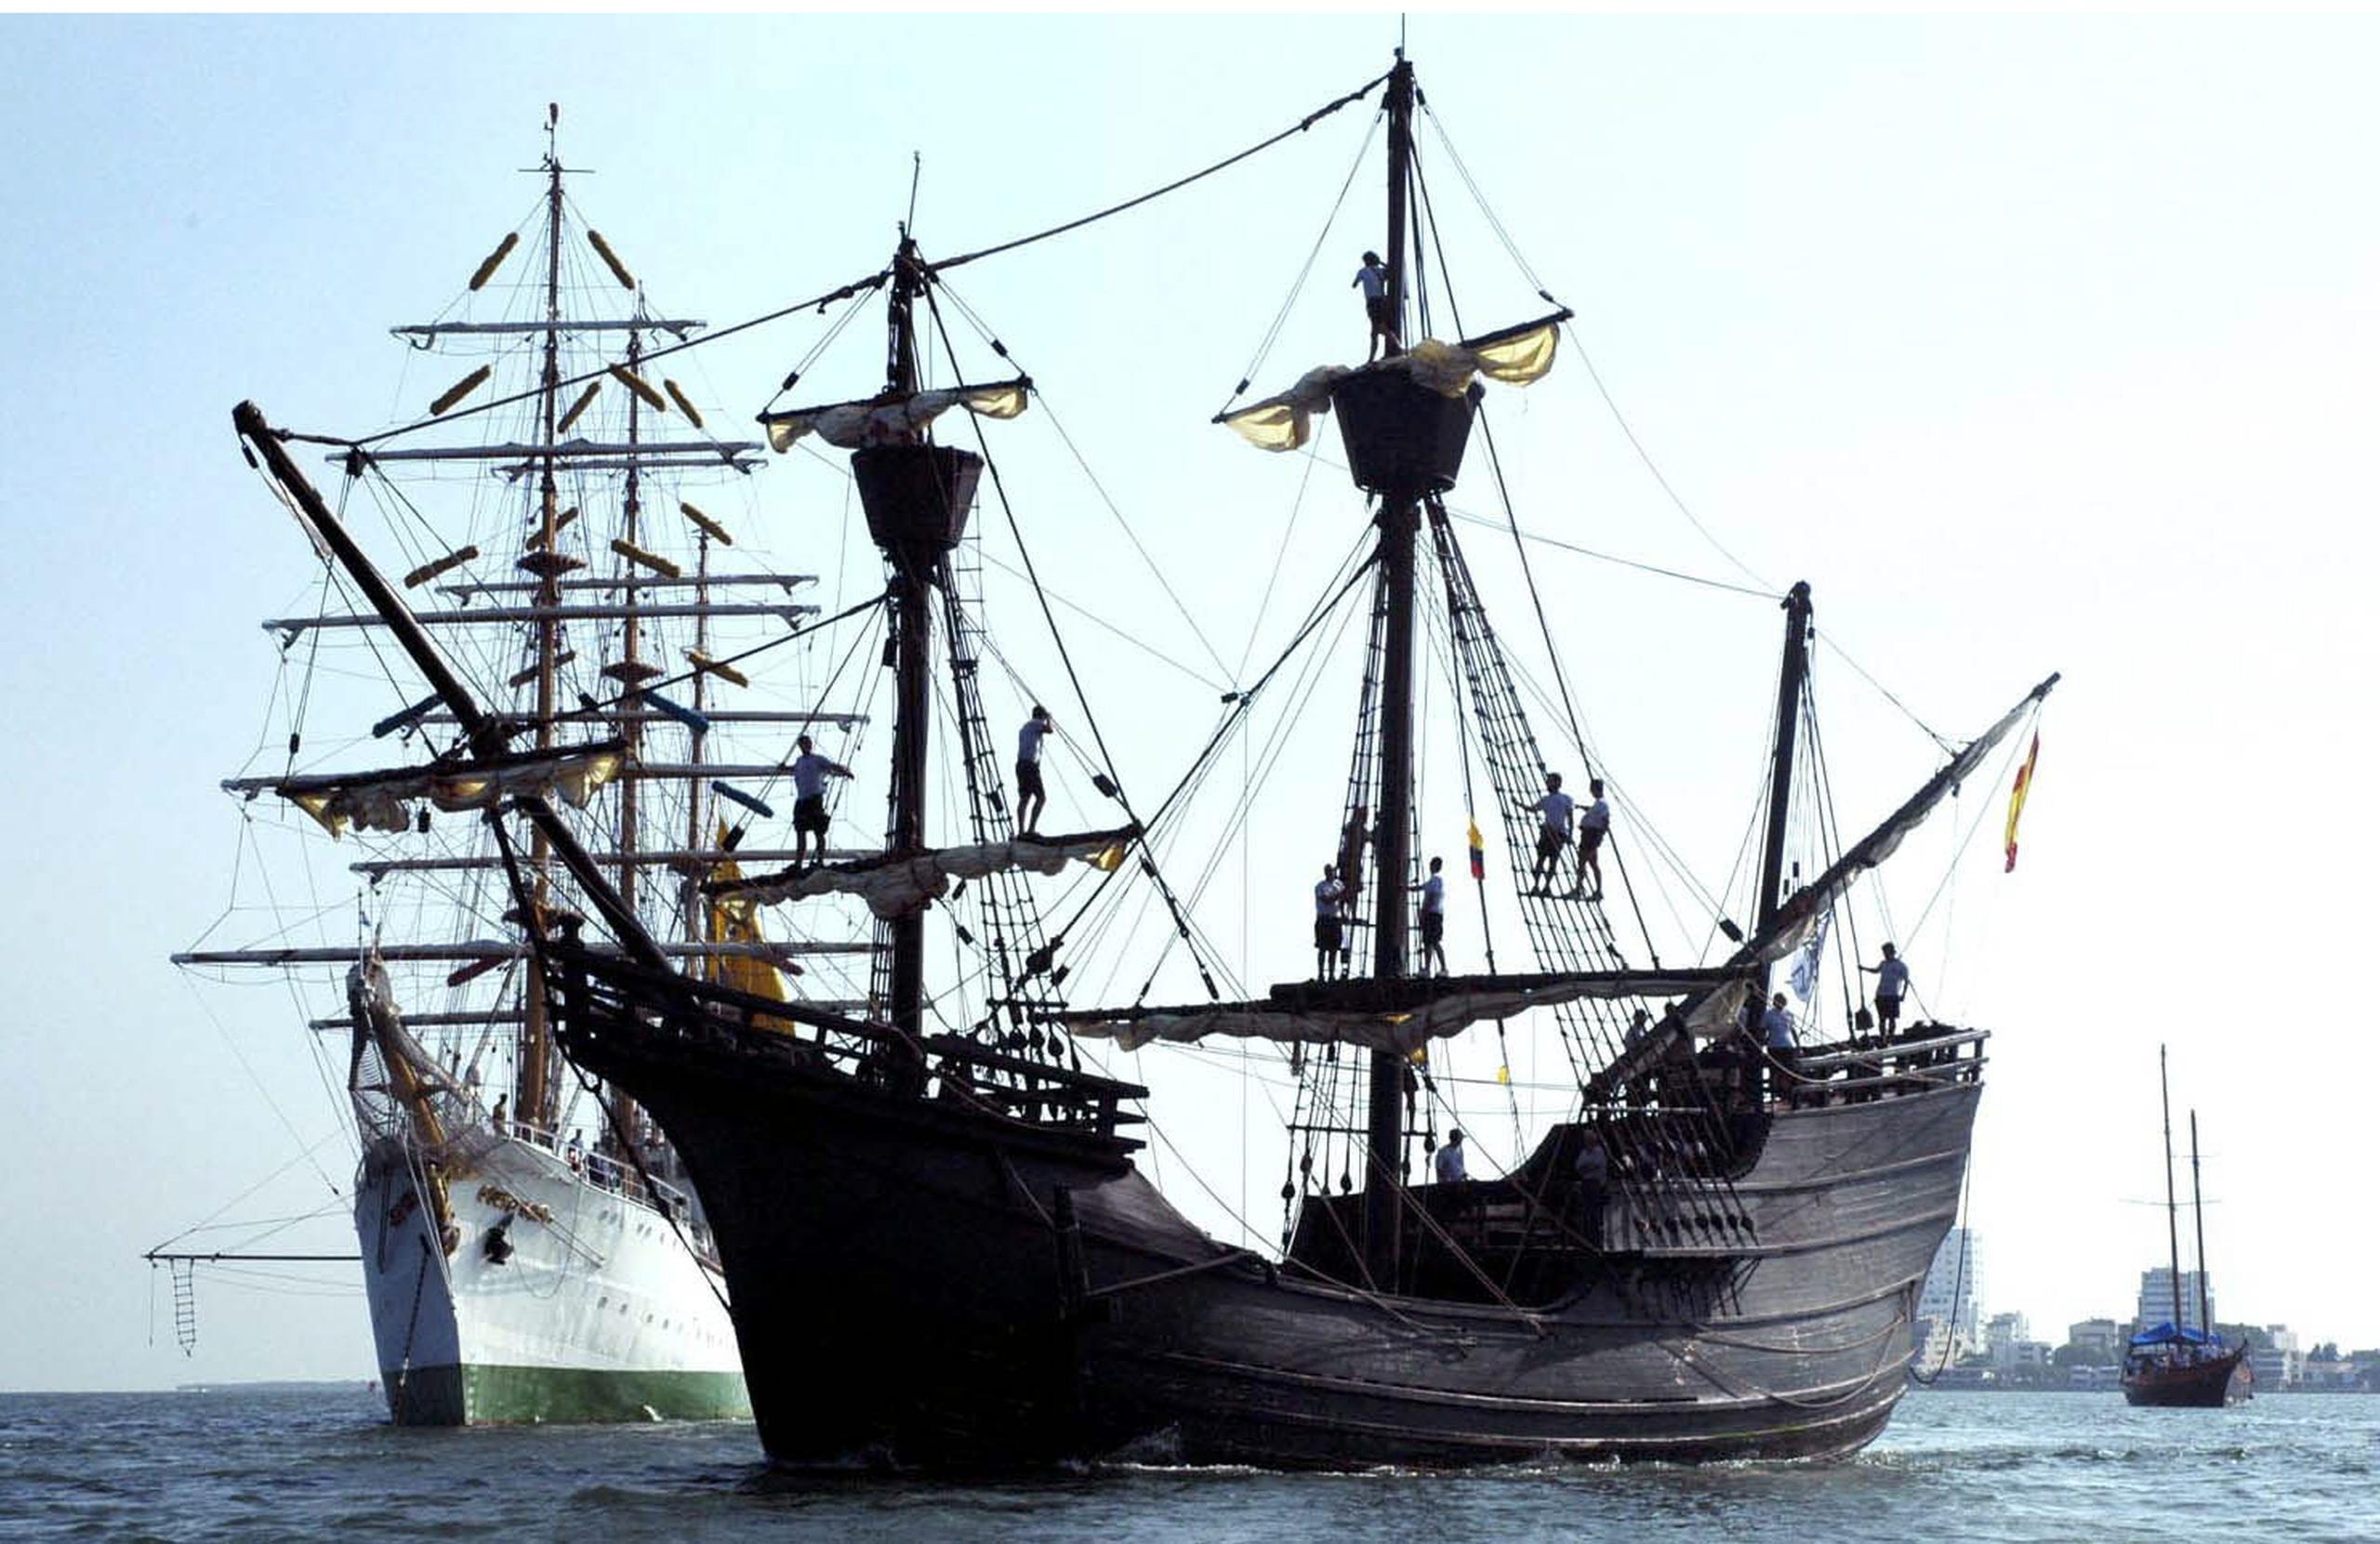 Foto de archivo de la réplica de un barco español del siglo XVI. EFE/Oscar Díaz
